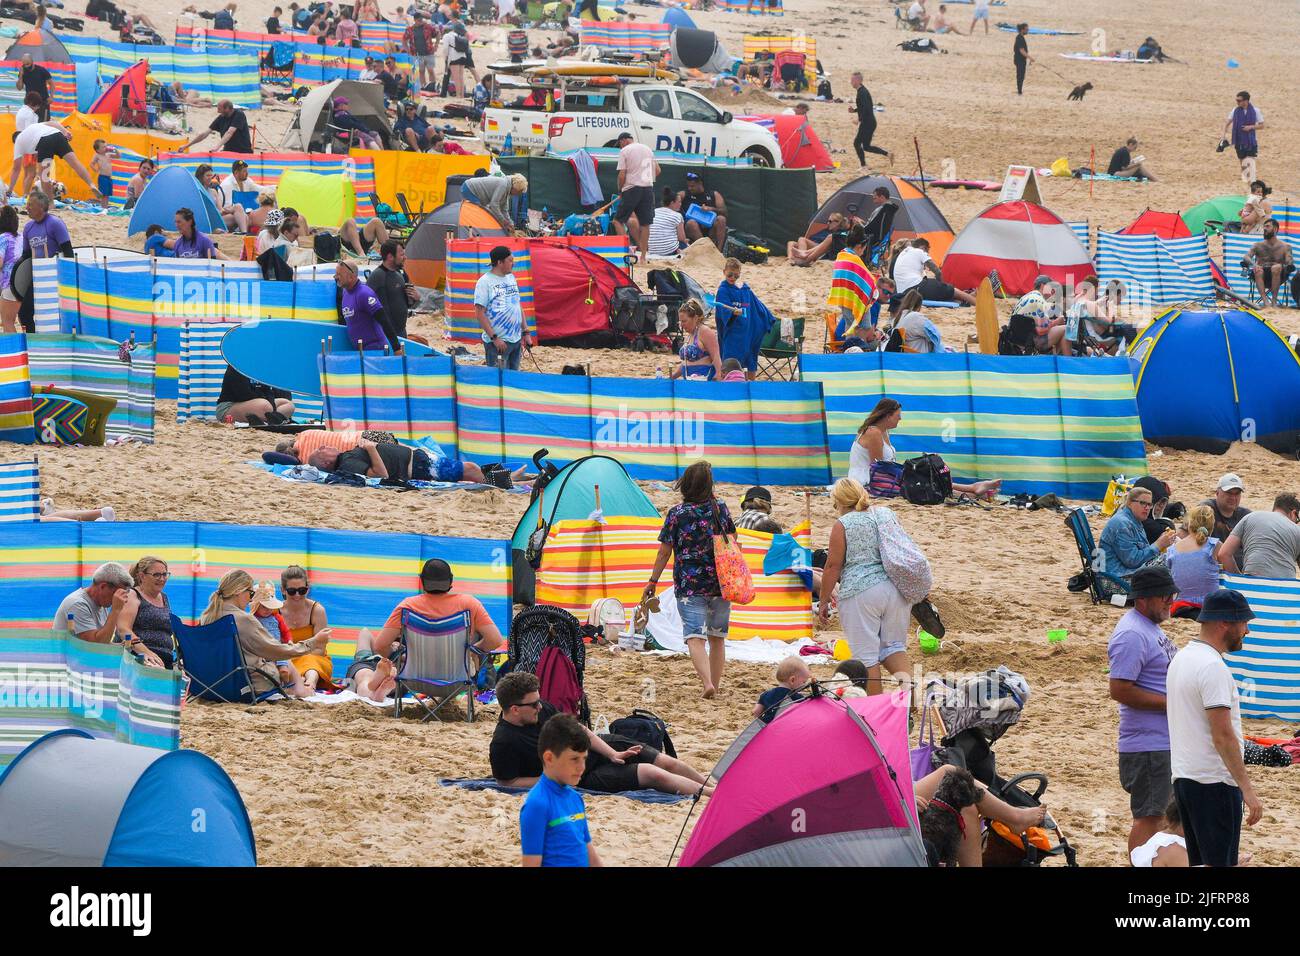 Les vacanciers du Royaume-Uni sur Fistral Beach ont profité du soleil brumeux chaud et de la brise marine rafraîchissante de Cornwall au Royaume-Uni. Banque D'Images